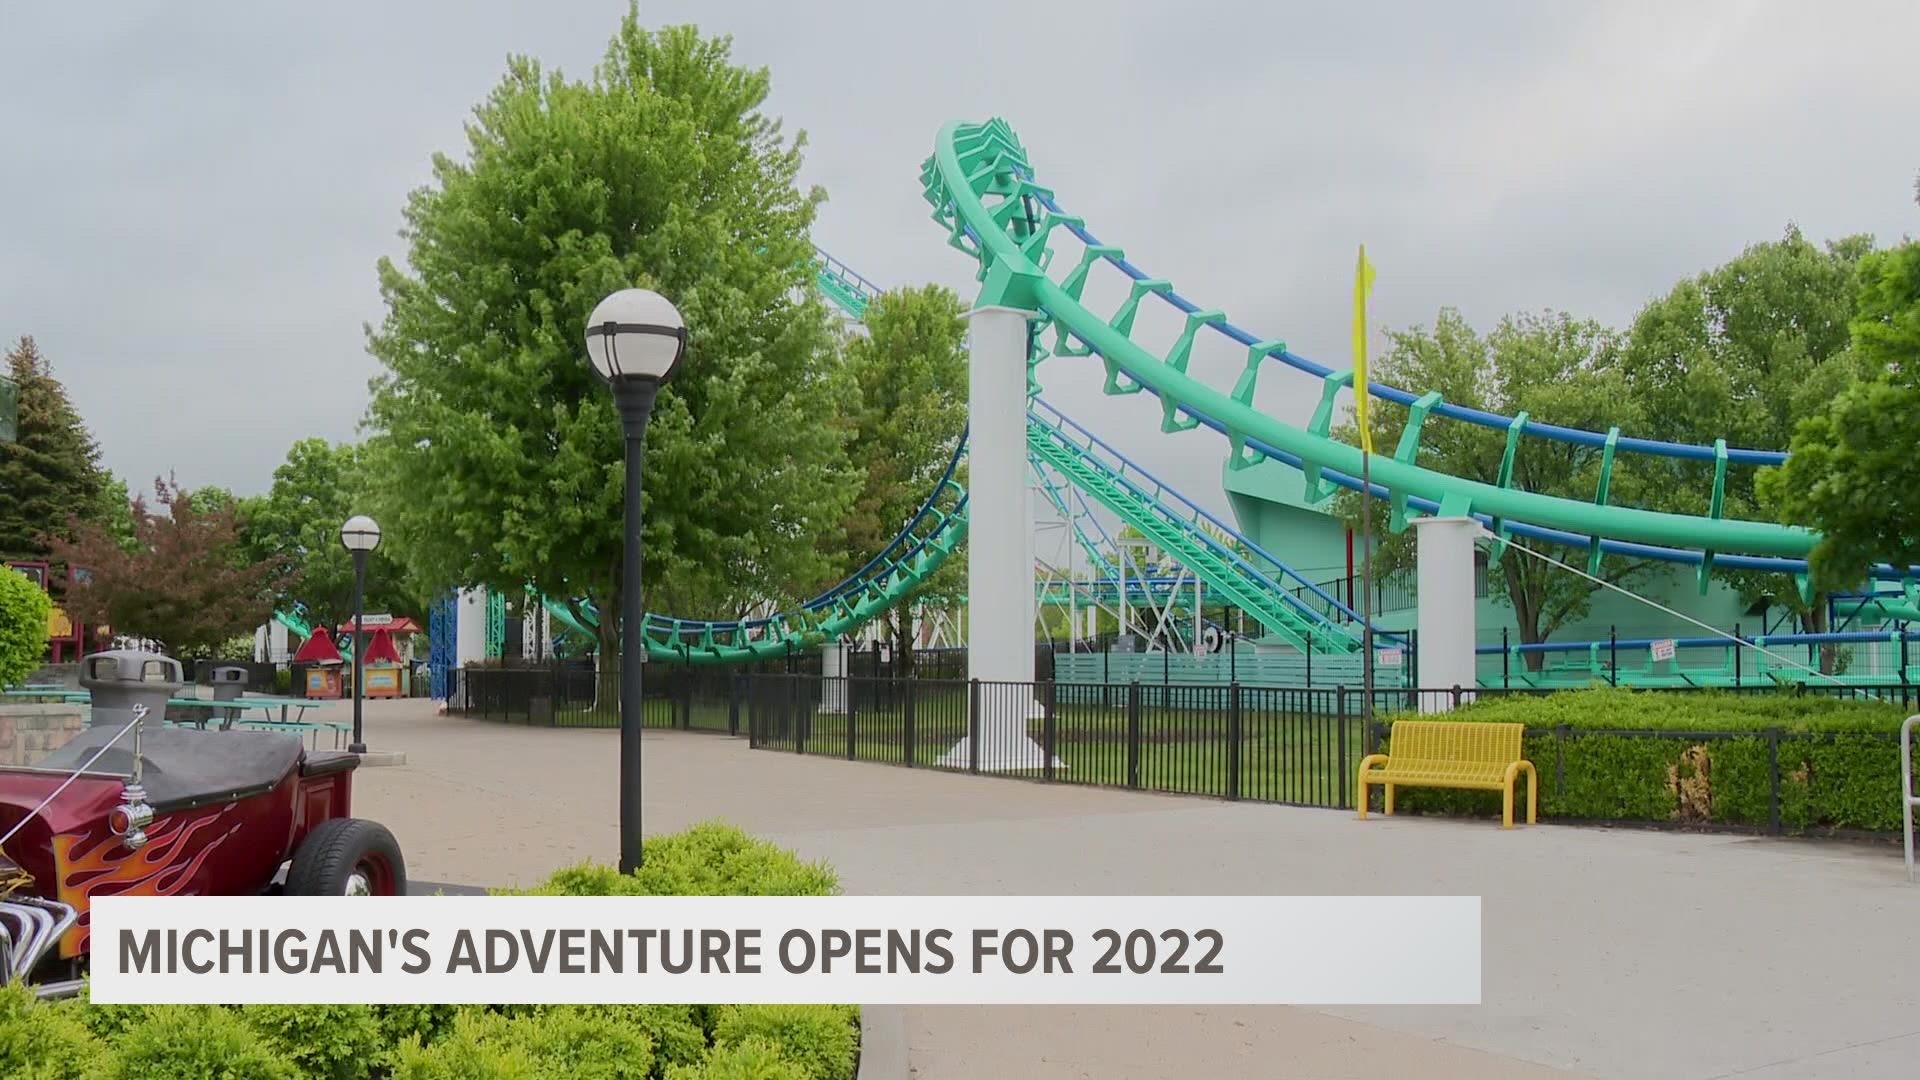 Michigan's Adventure opens for the 2022 season